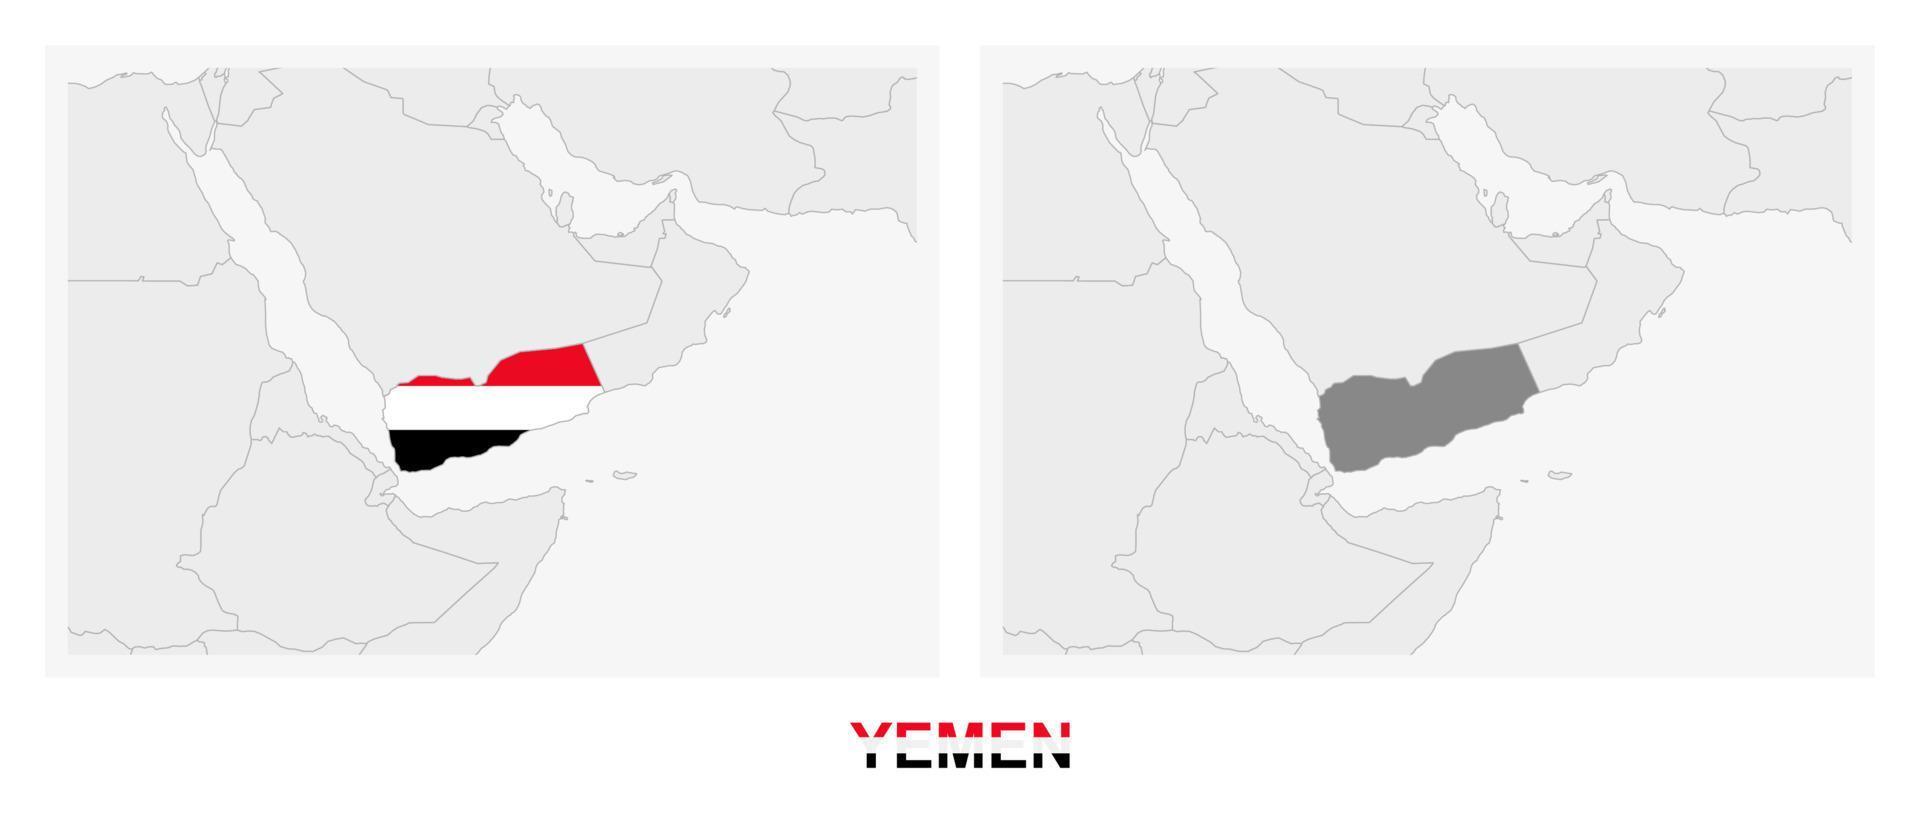 zwei versionen der karte des jemen, mit der flagge des jemen und dunkelgrau hervorgehoben. vektor